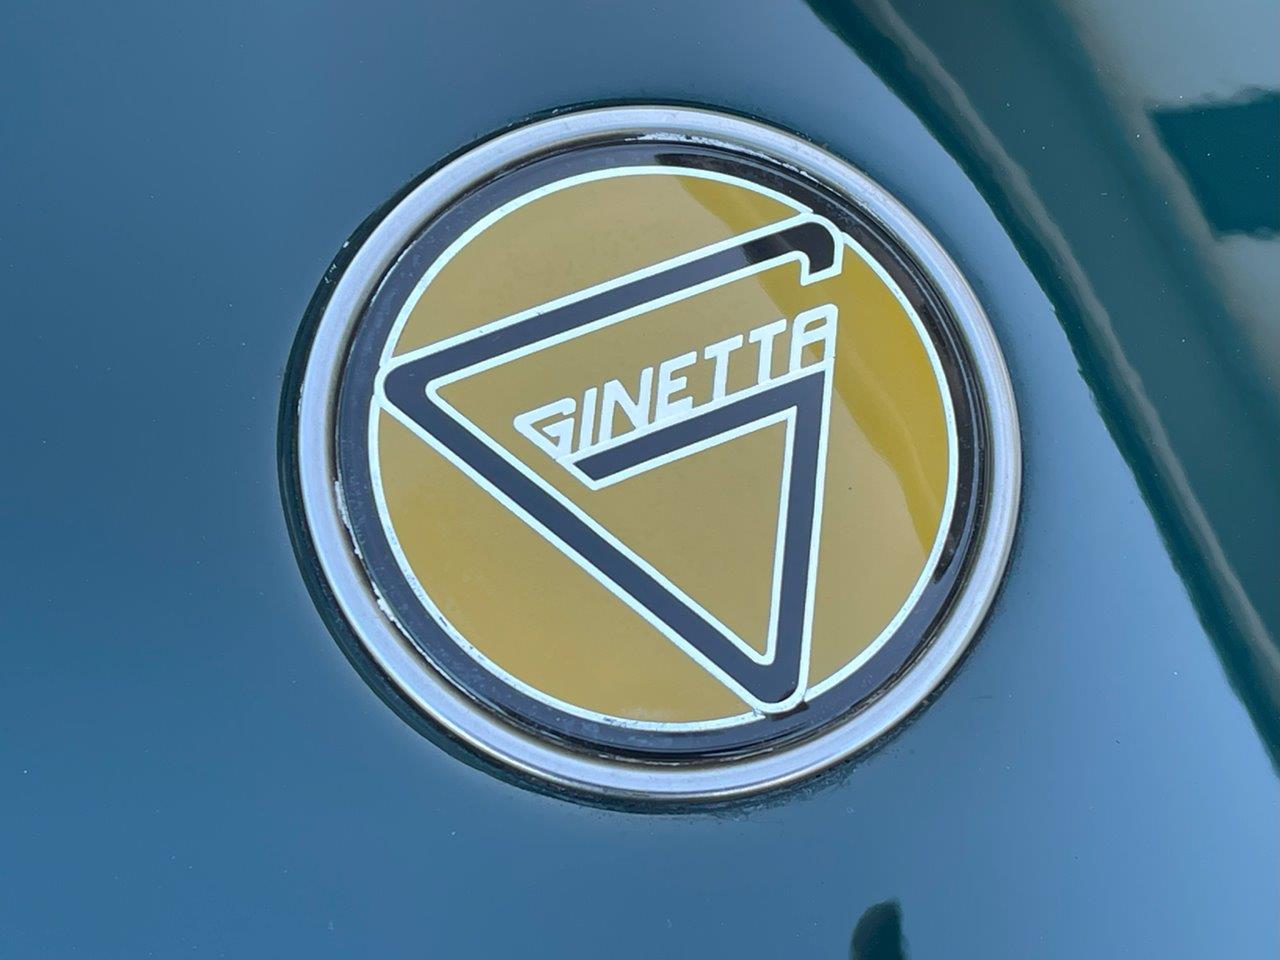 ジネッタ Ginetta G4 ロードスター 96年式 DARE物 ZETECエンジン 4輪ダブルウィッシュボーン